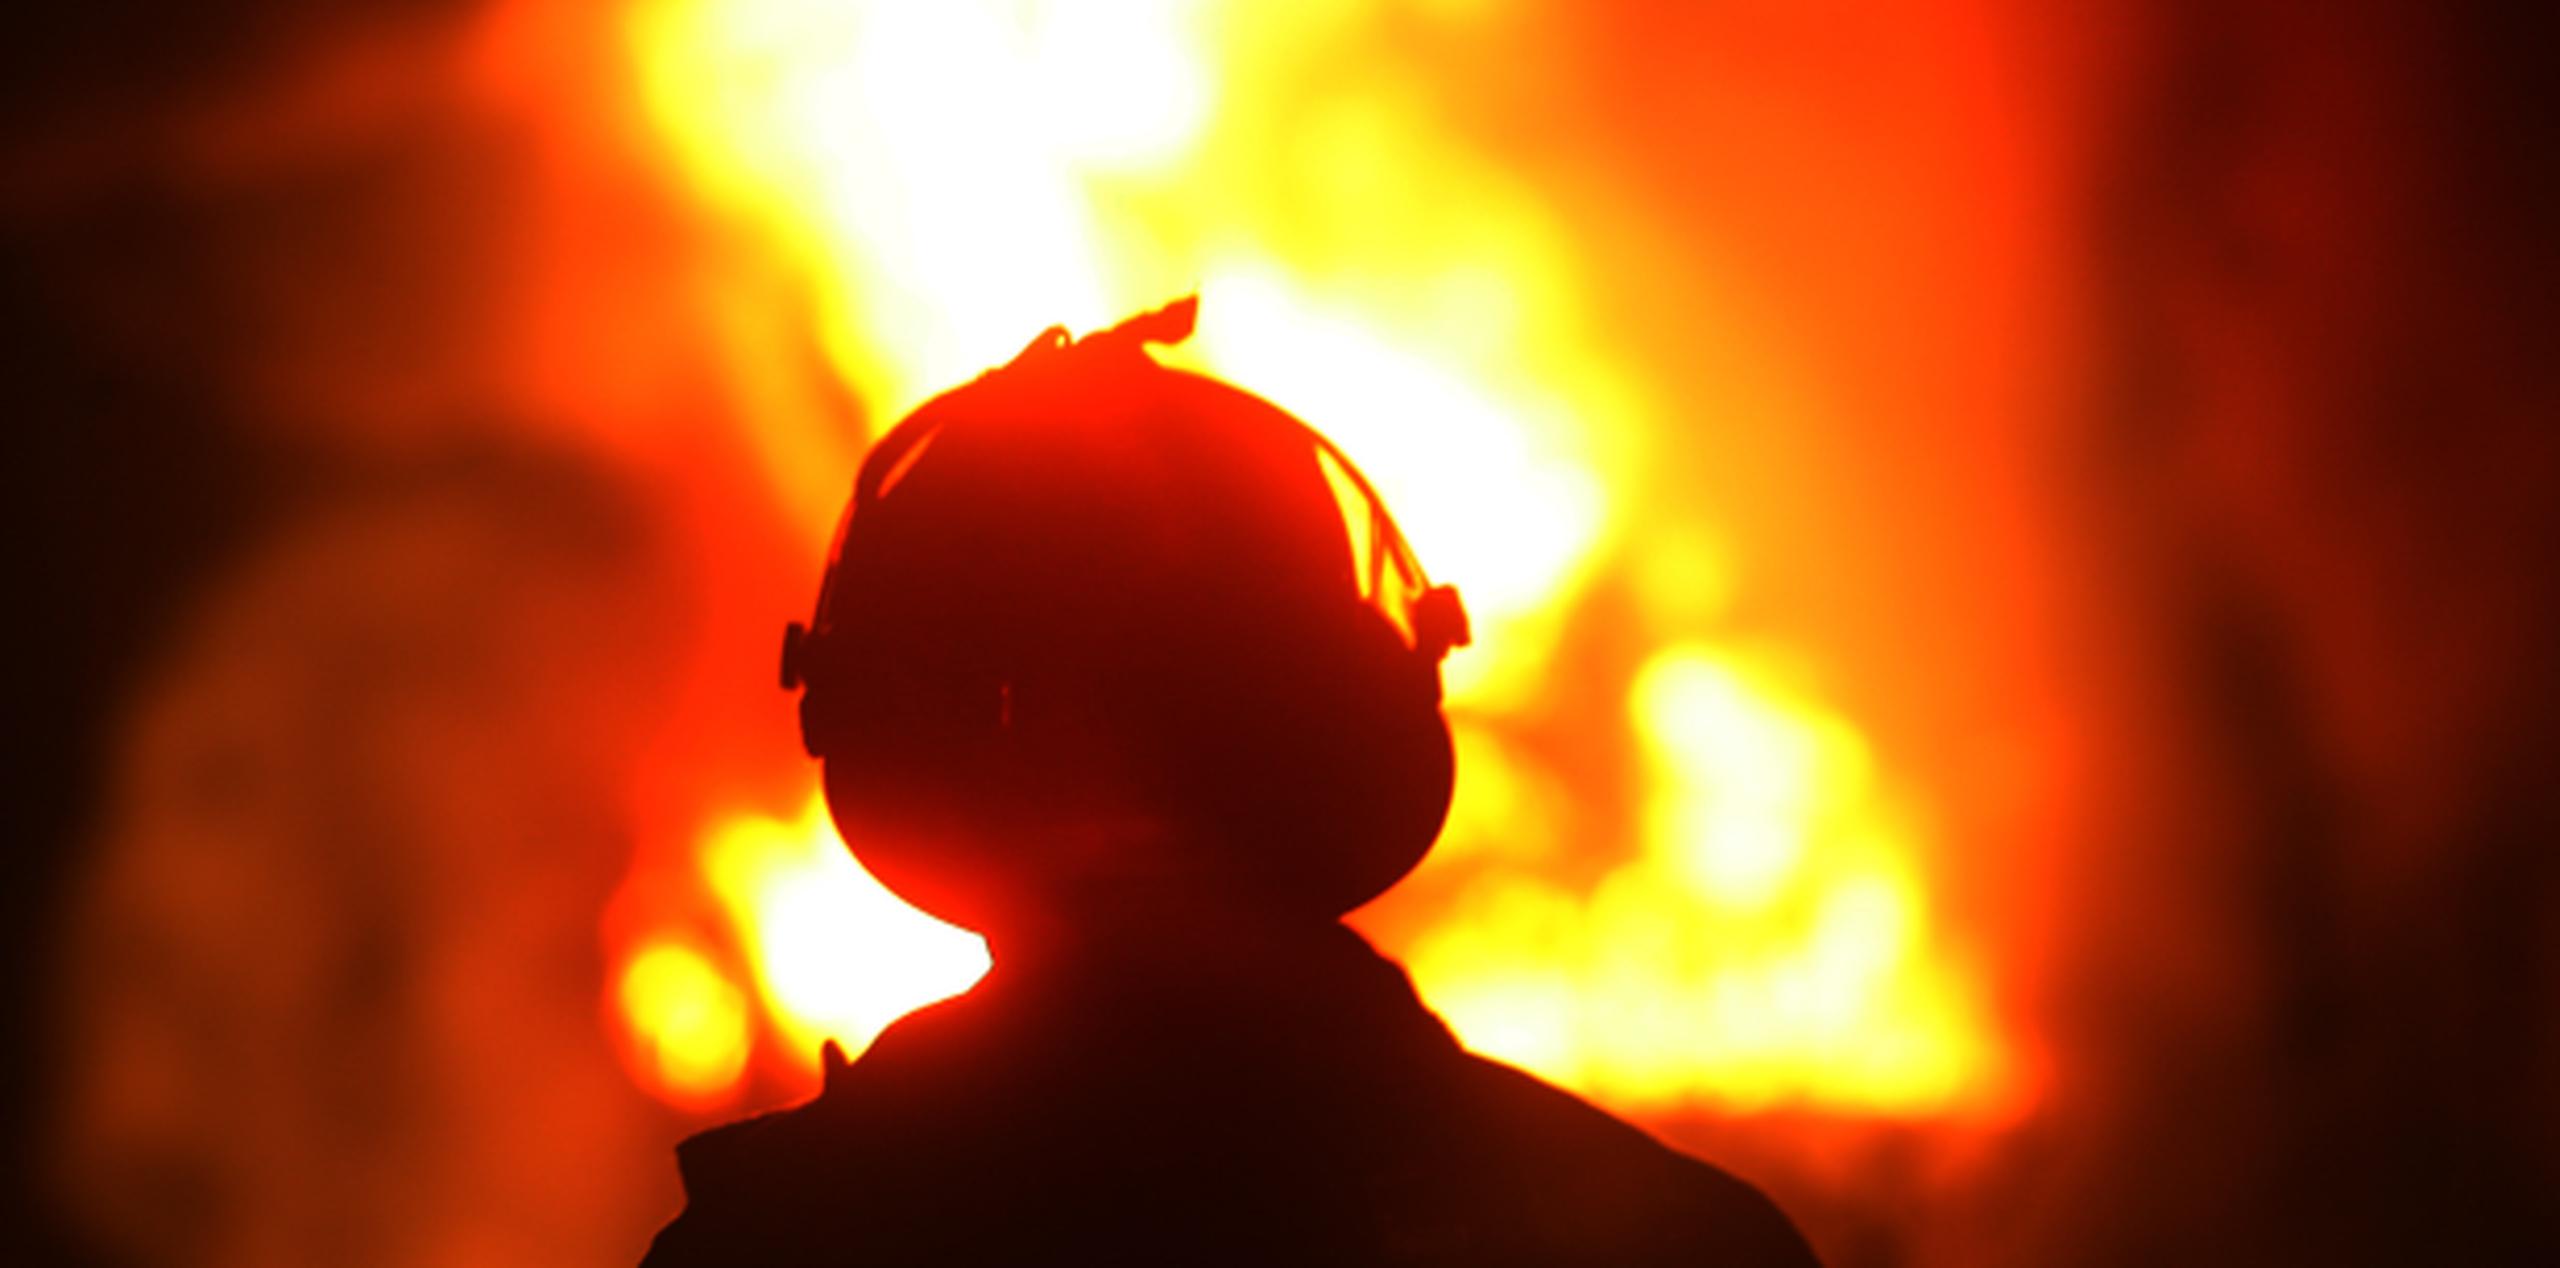 Varios camiones de bomberos trabajaron durante horas para extinguir las llamas, y los investigadores buscaban pistas entre los escombros. (Archivo)